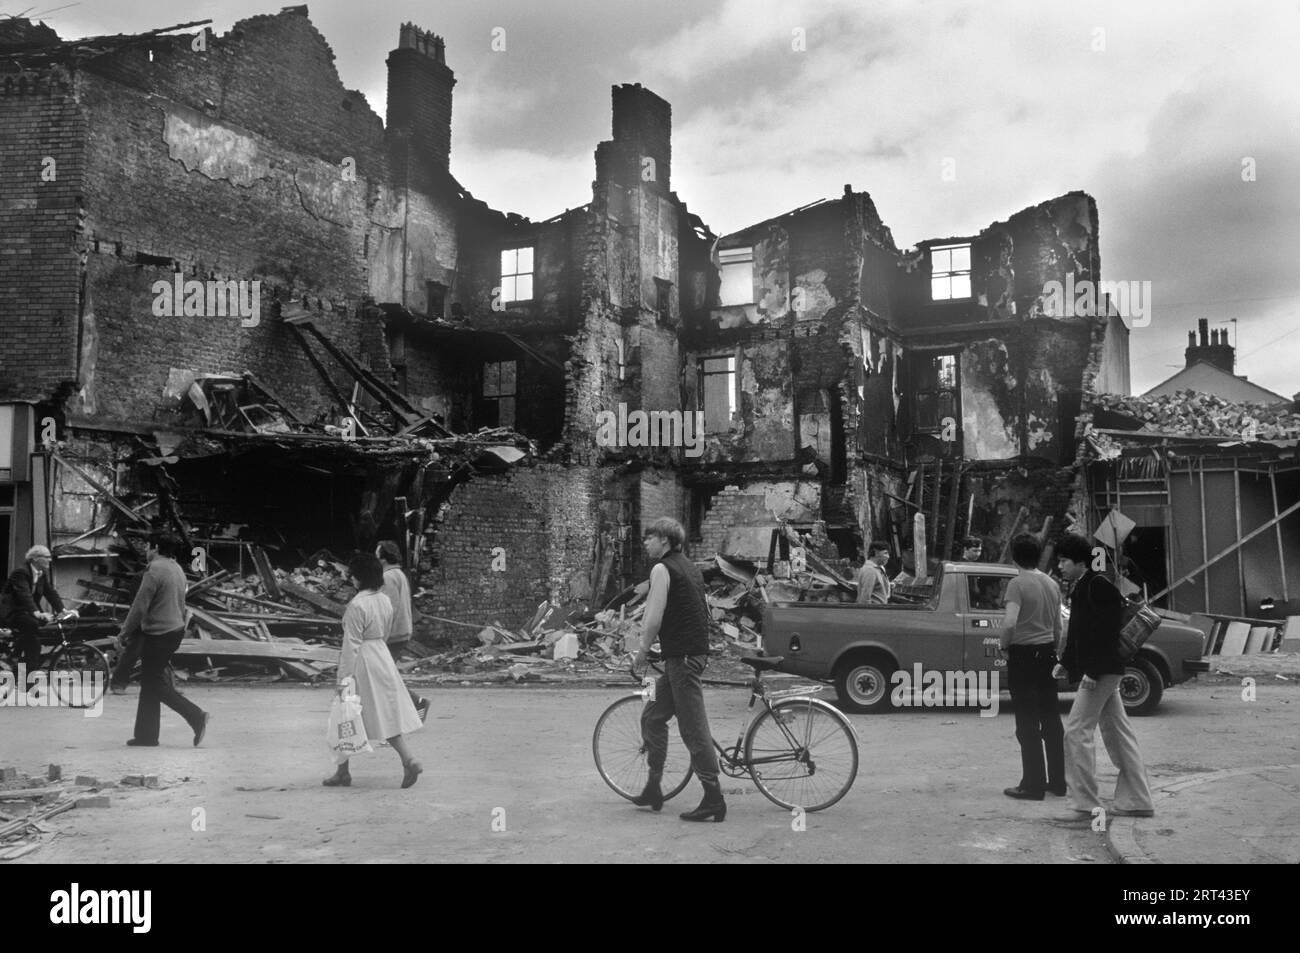 Toxteth Riots 1981 UK.la mattina dopo la notte dei disordini, una gente del posto esce per strada per osservare i danni causati dai disordini, dagli incendi e dagli edifici distrutti. Toxteth, Liverpool 8, Inghilterra circa luglio 1980s HOMER SYKES Foto Stock